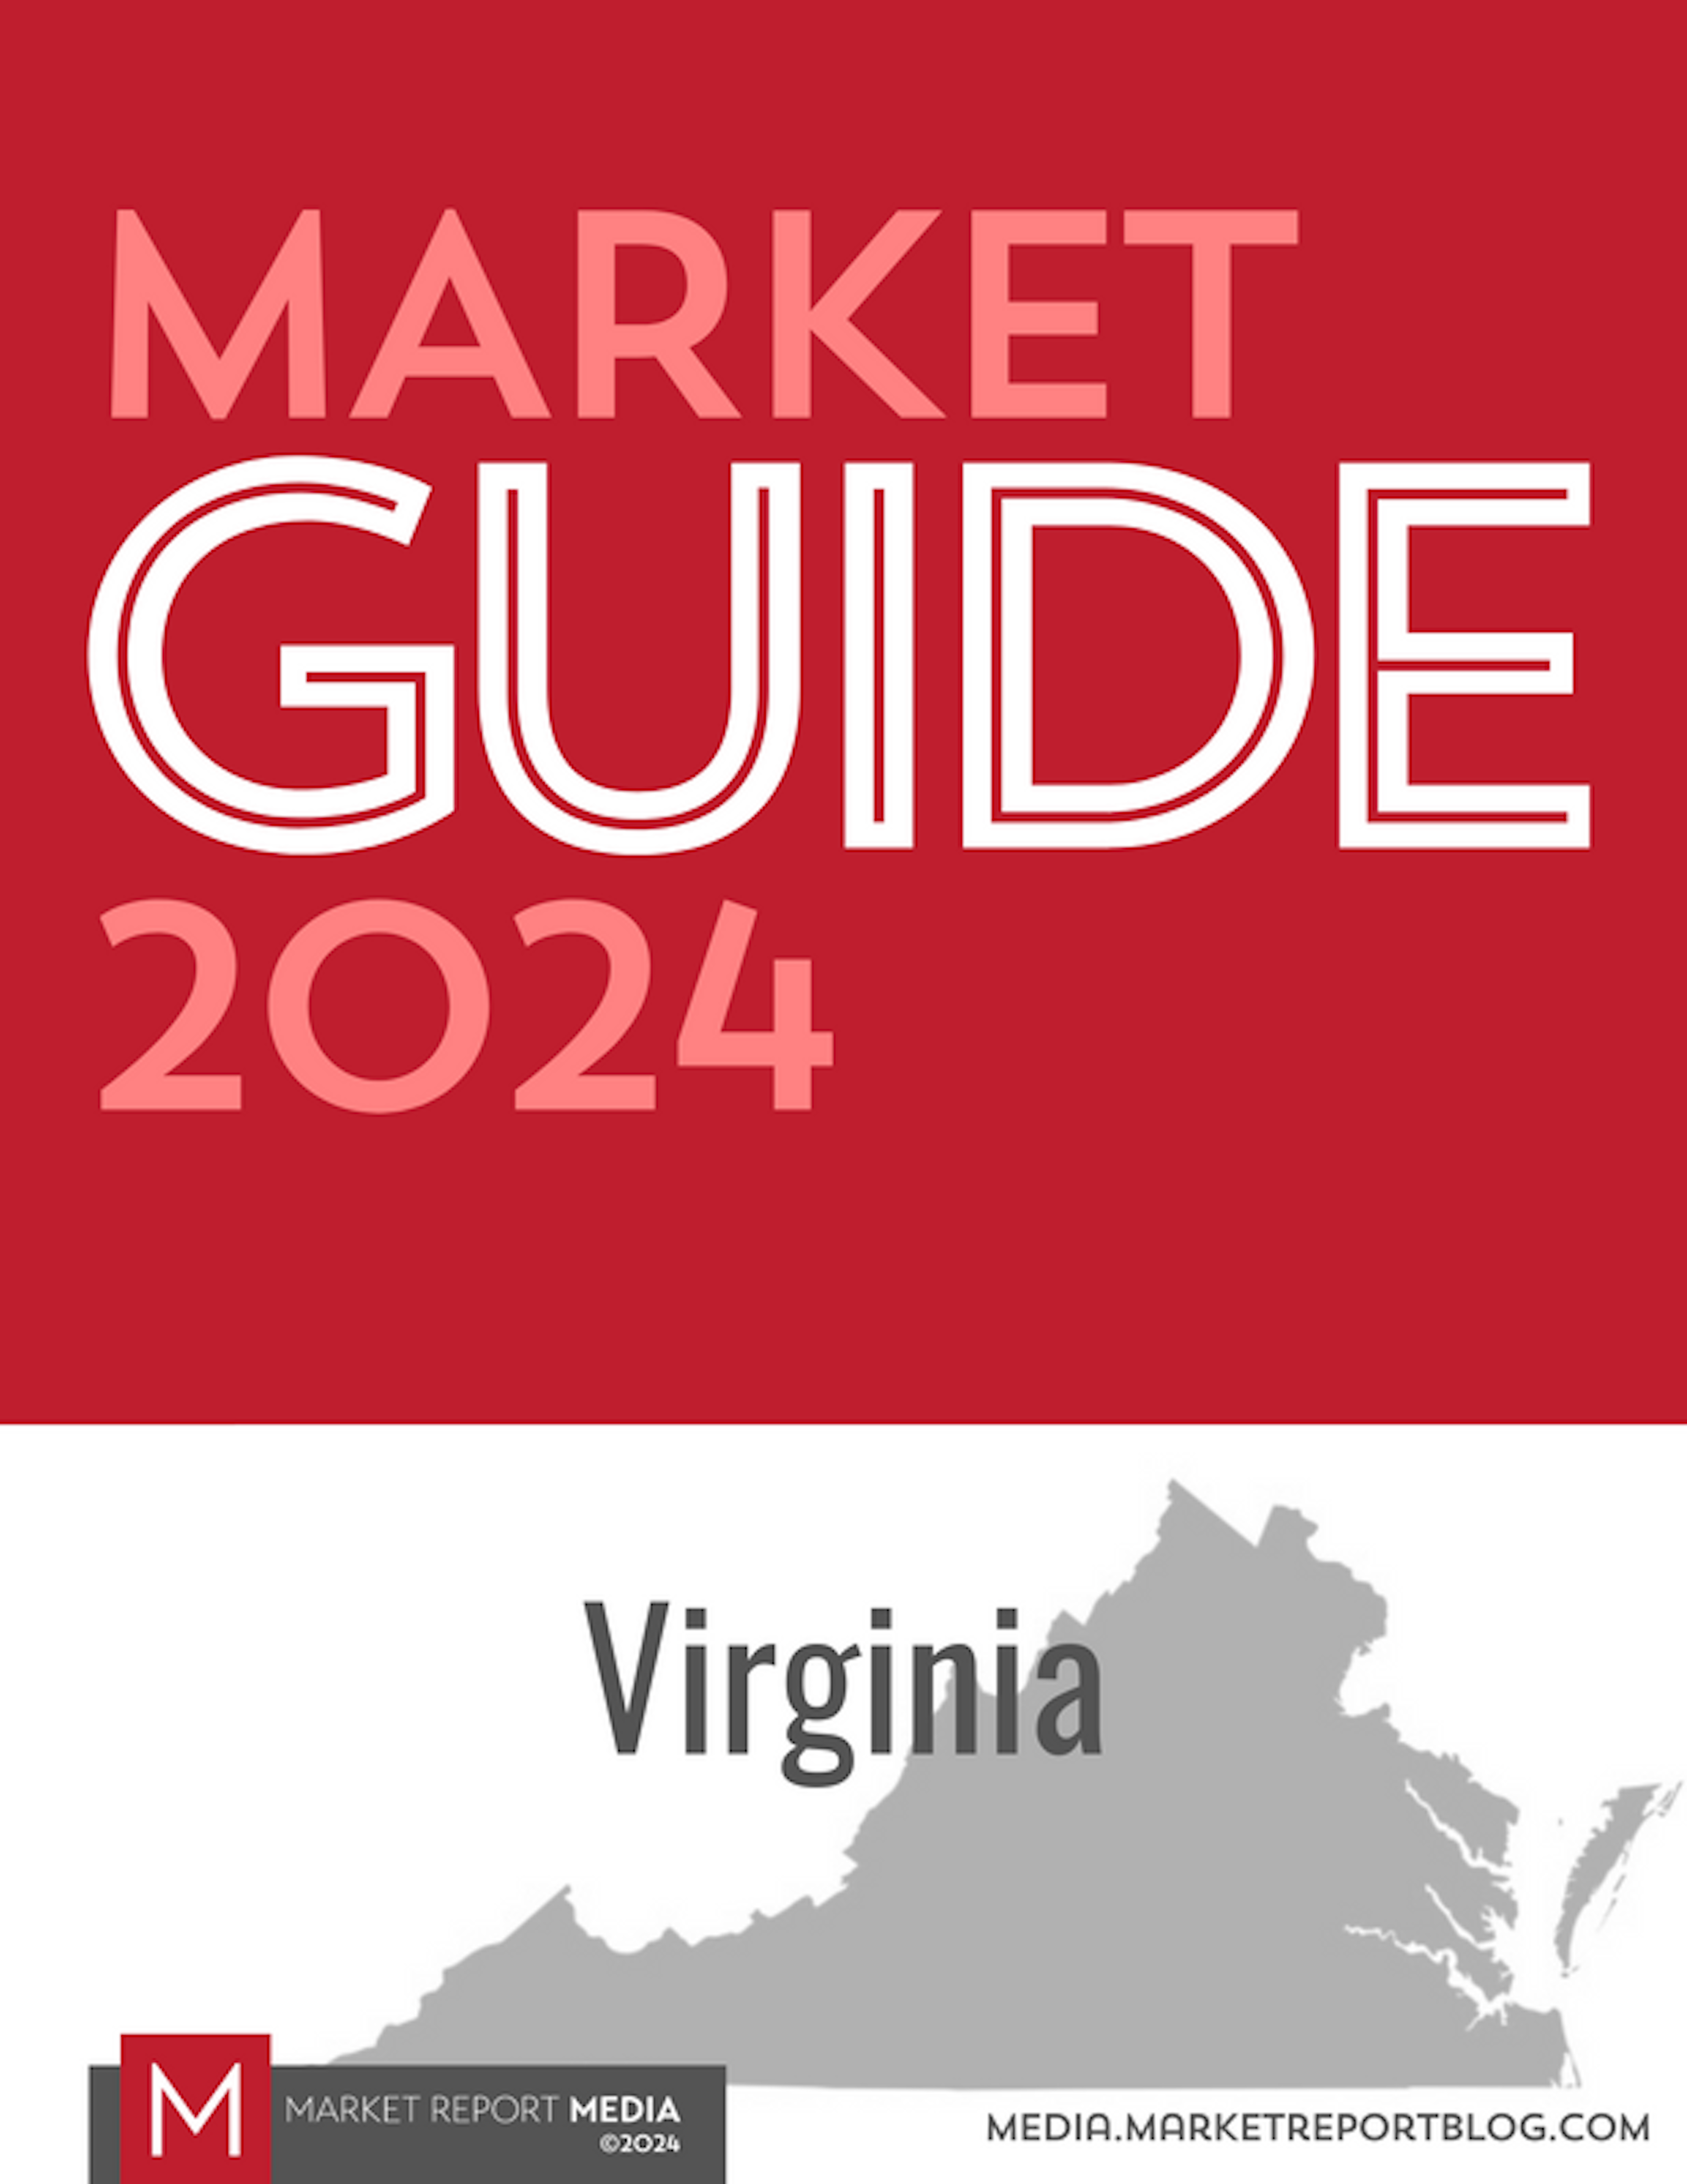 Market Guide 2024 - Virginia